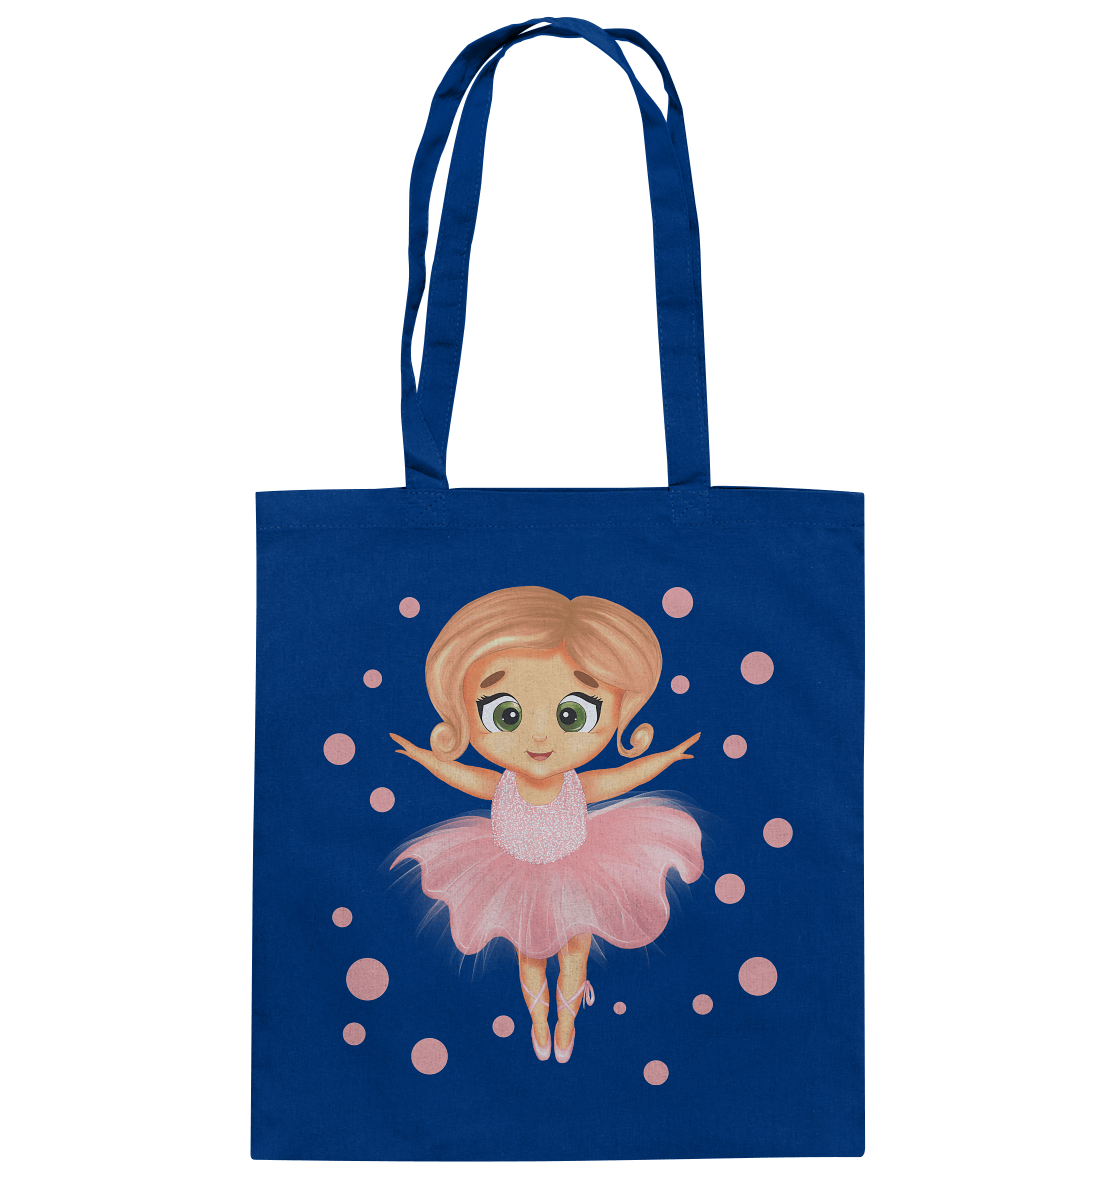 Baumwolltasche in royal Blau mit Ballerina-Design in rosa